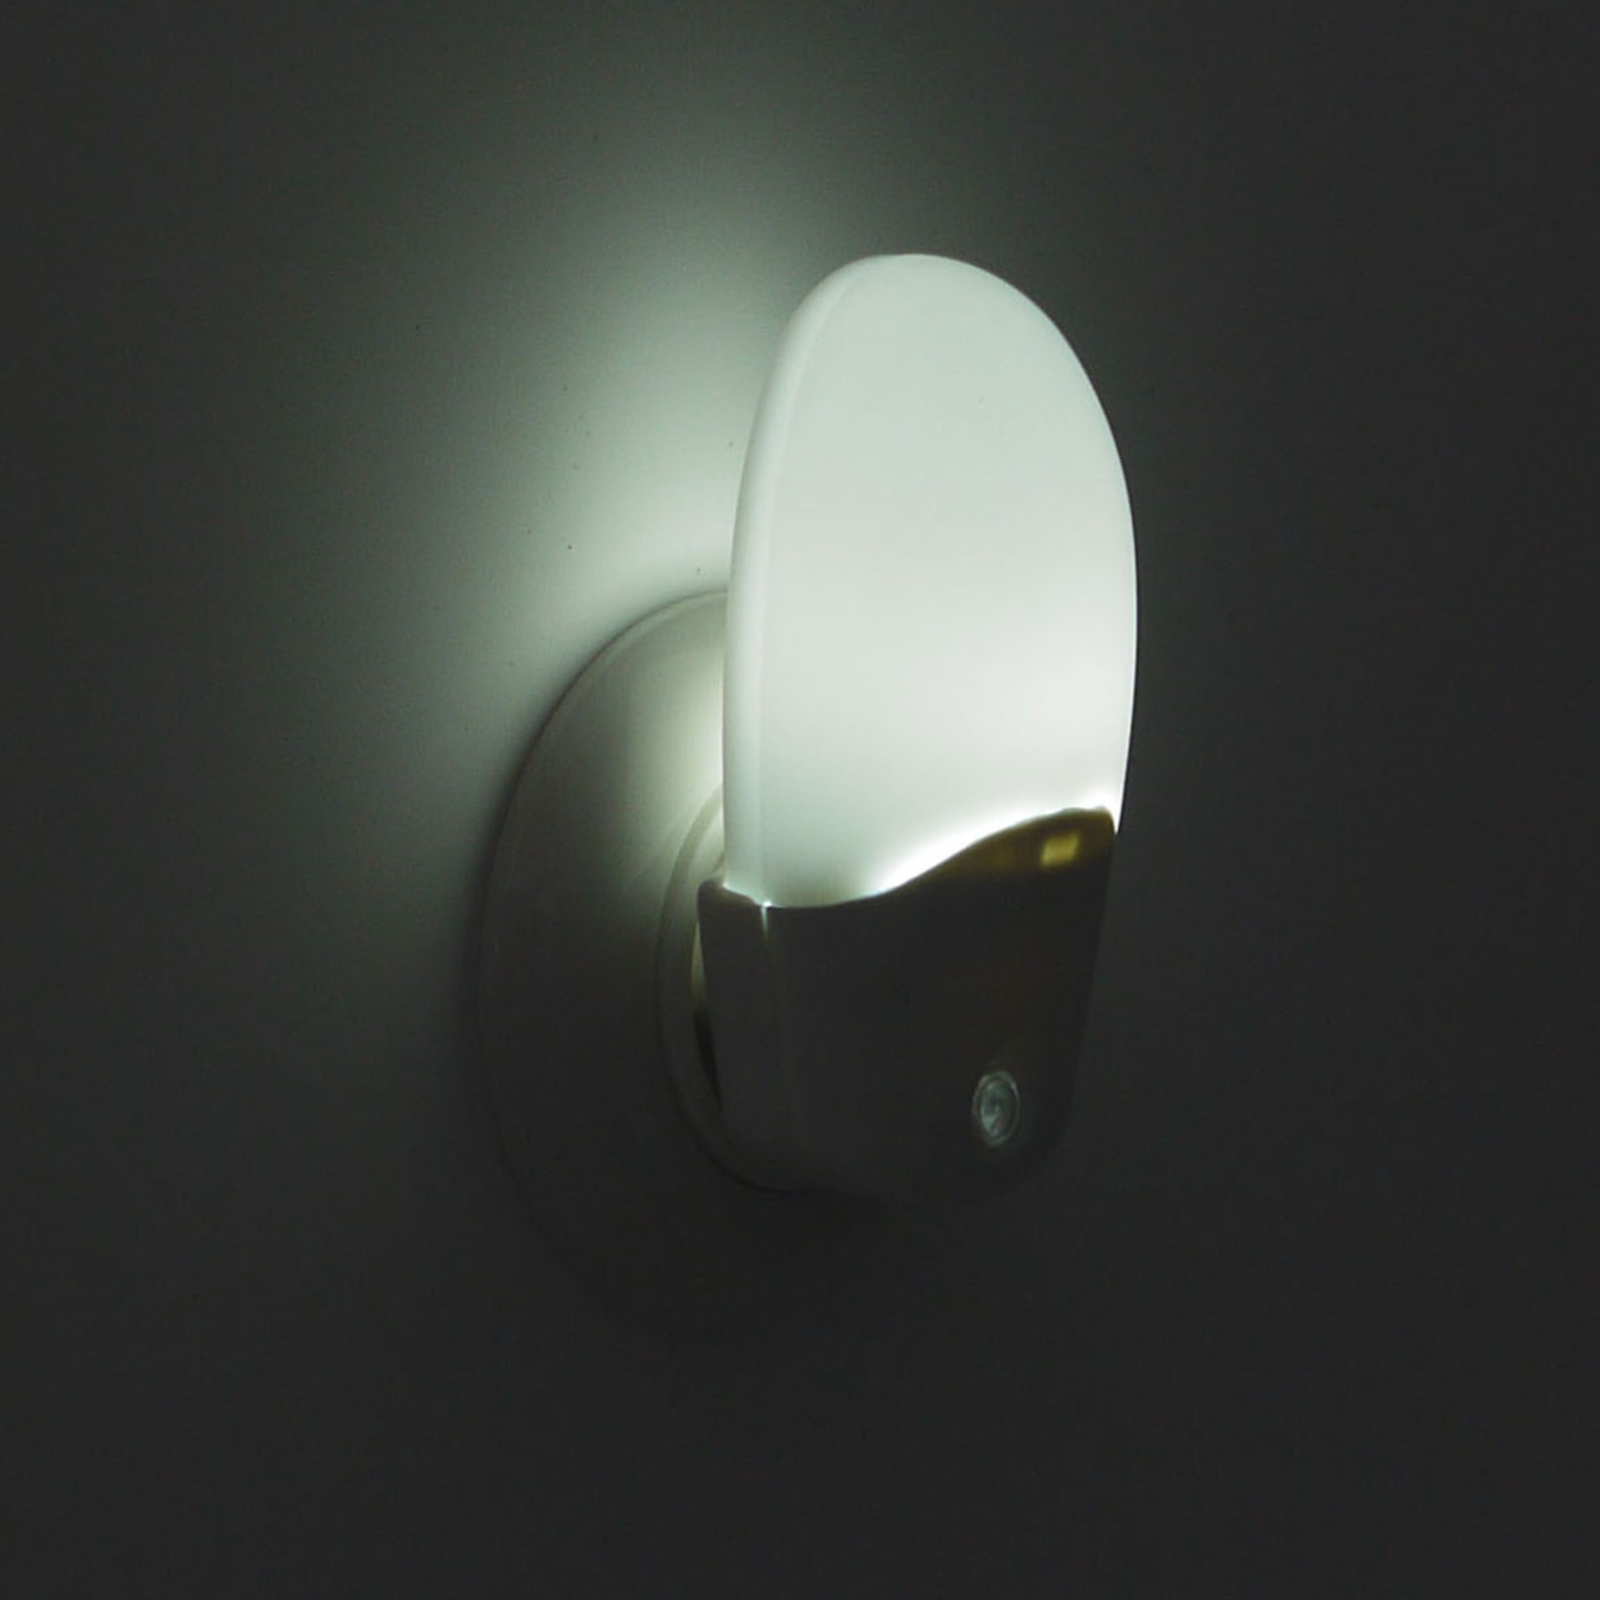 LED nachtlampje Oval met schemersensor